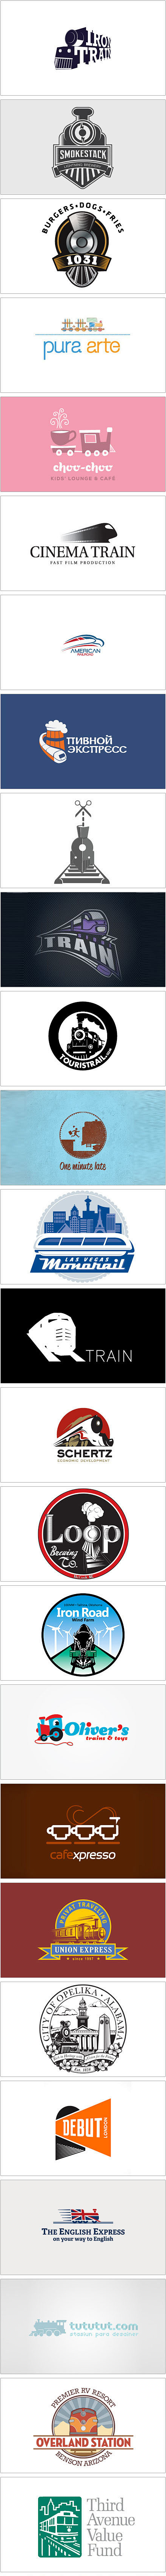 一组火车元素的Logo设计.jpg